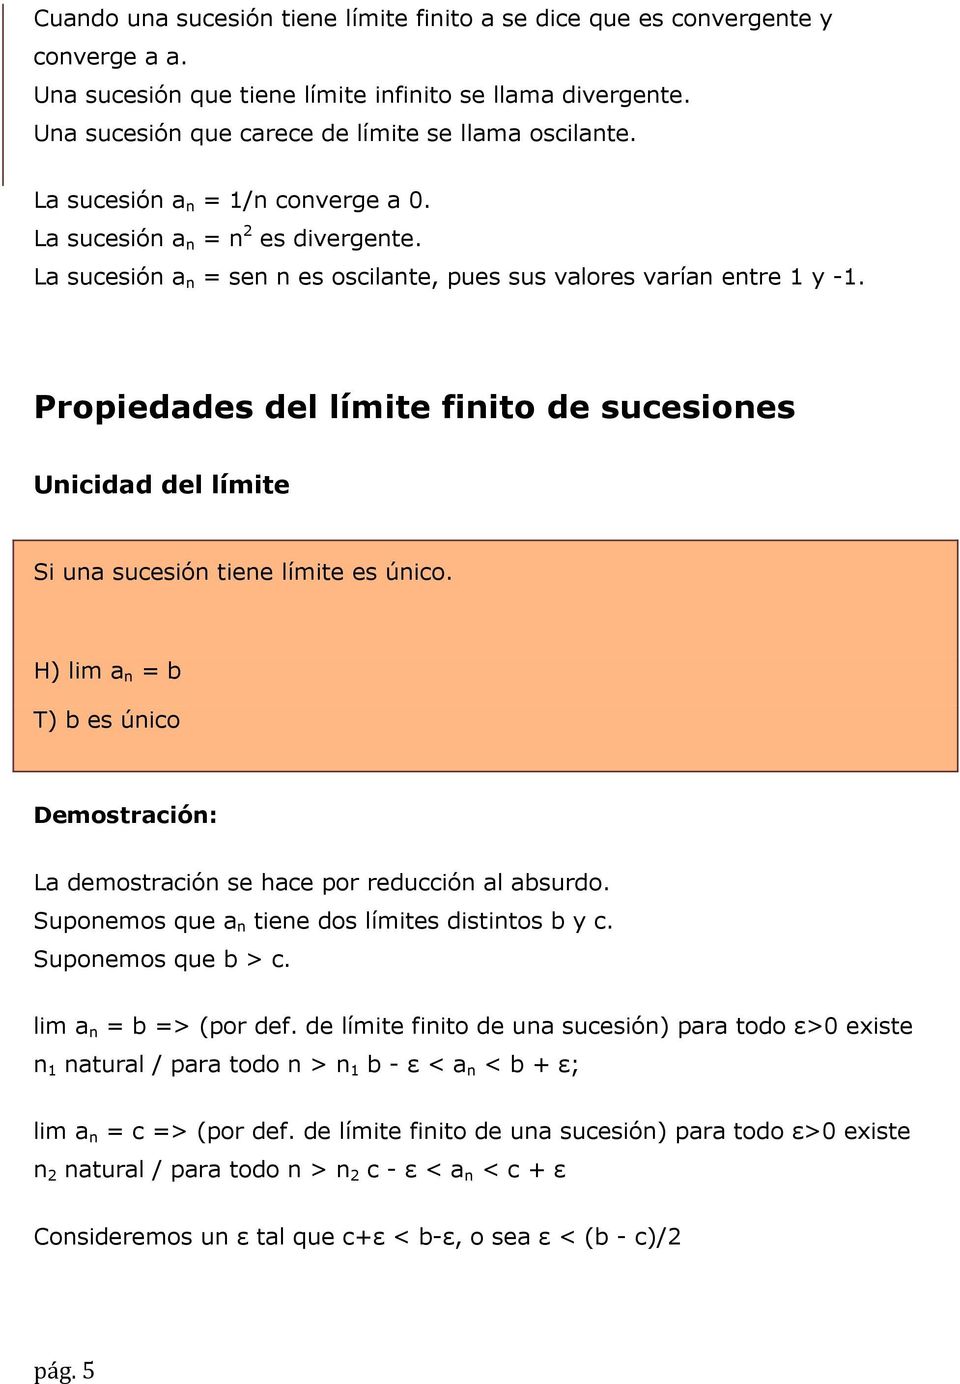 Propiedades del límite finito de sucesiones Unicidad del límite Si una sucesión tiene límite es único. H) lim a n = b T) b es único Demostración: La demostración se hace por reducción al absurdo.